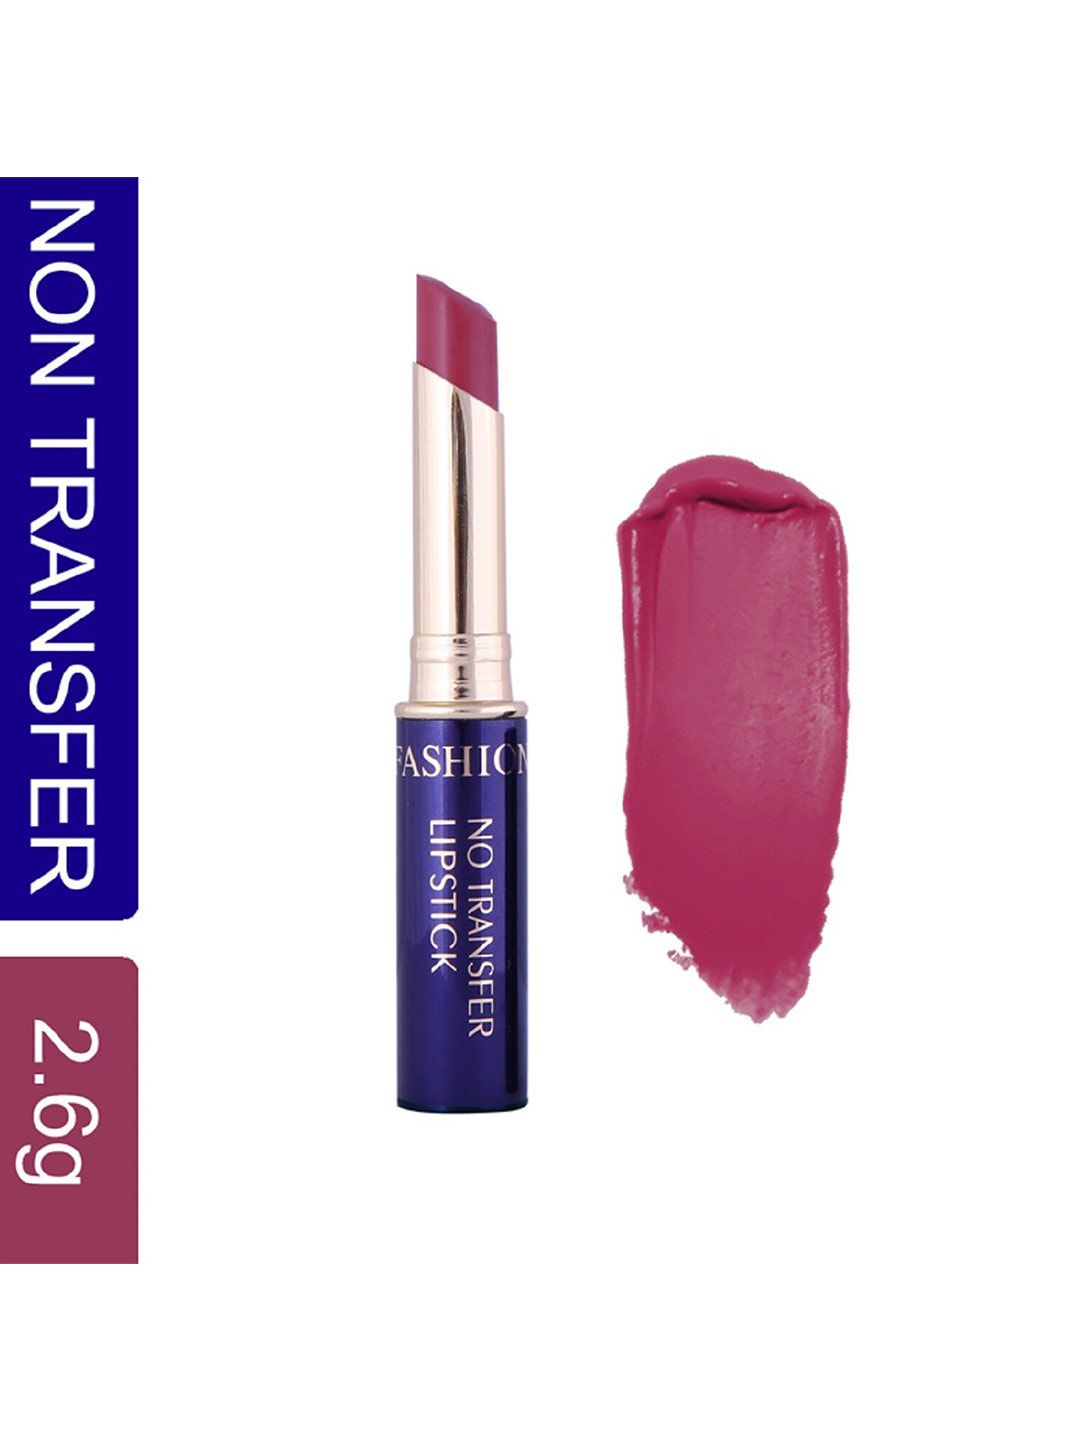 Fashion Colour Non-Transfer Matte Waterproof Lipstick - Agate Purple 34 Price in India